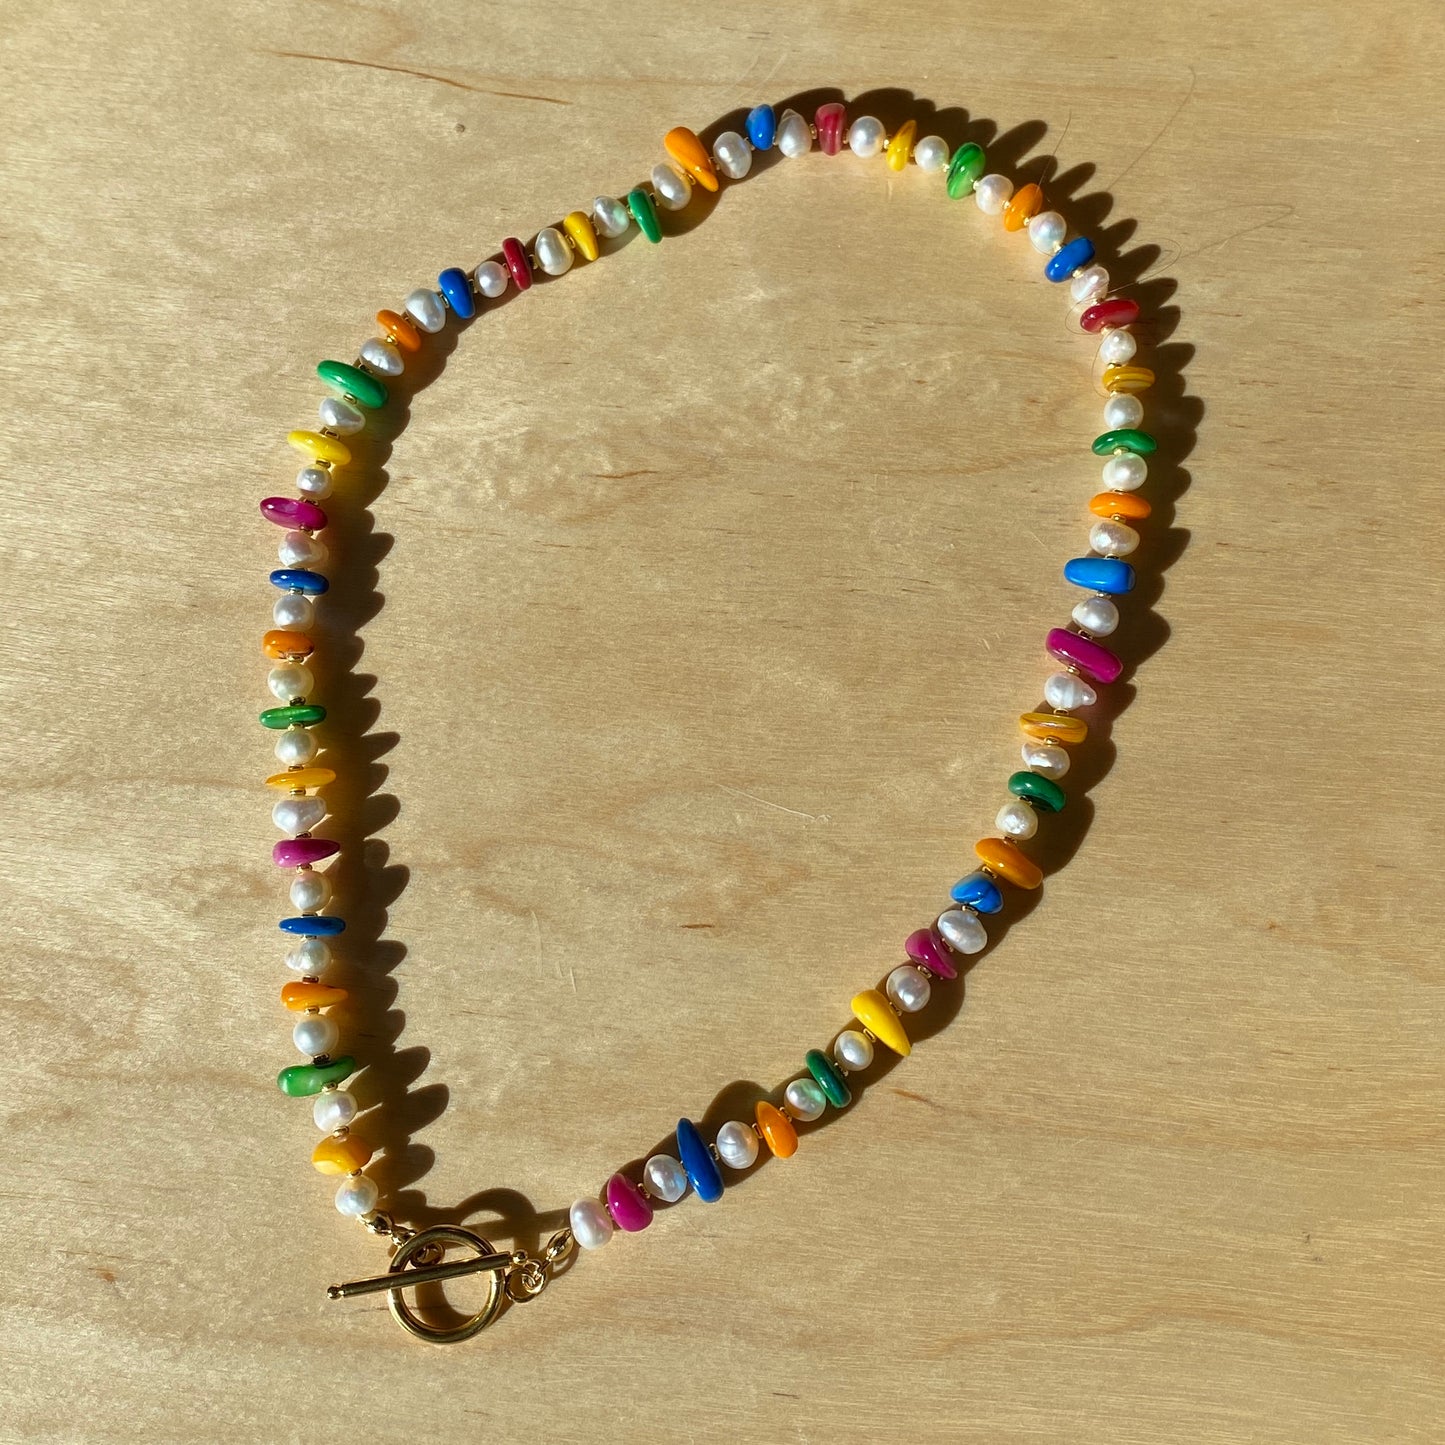 Iris necklace